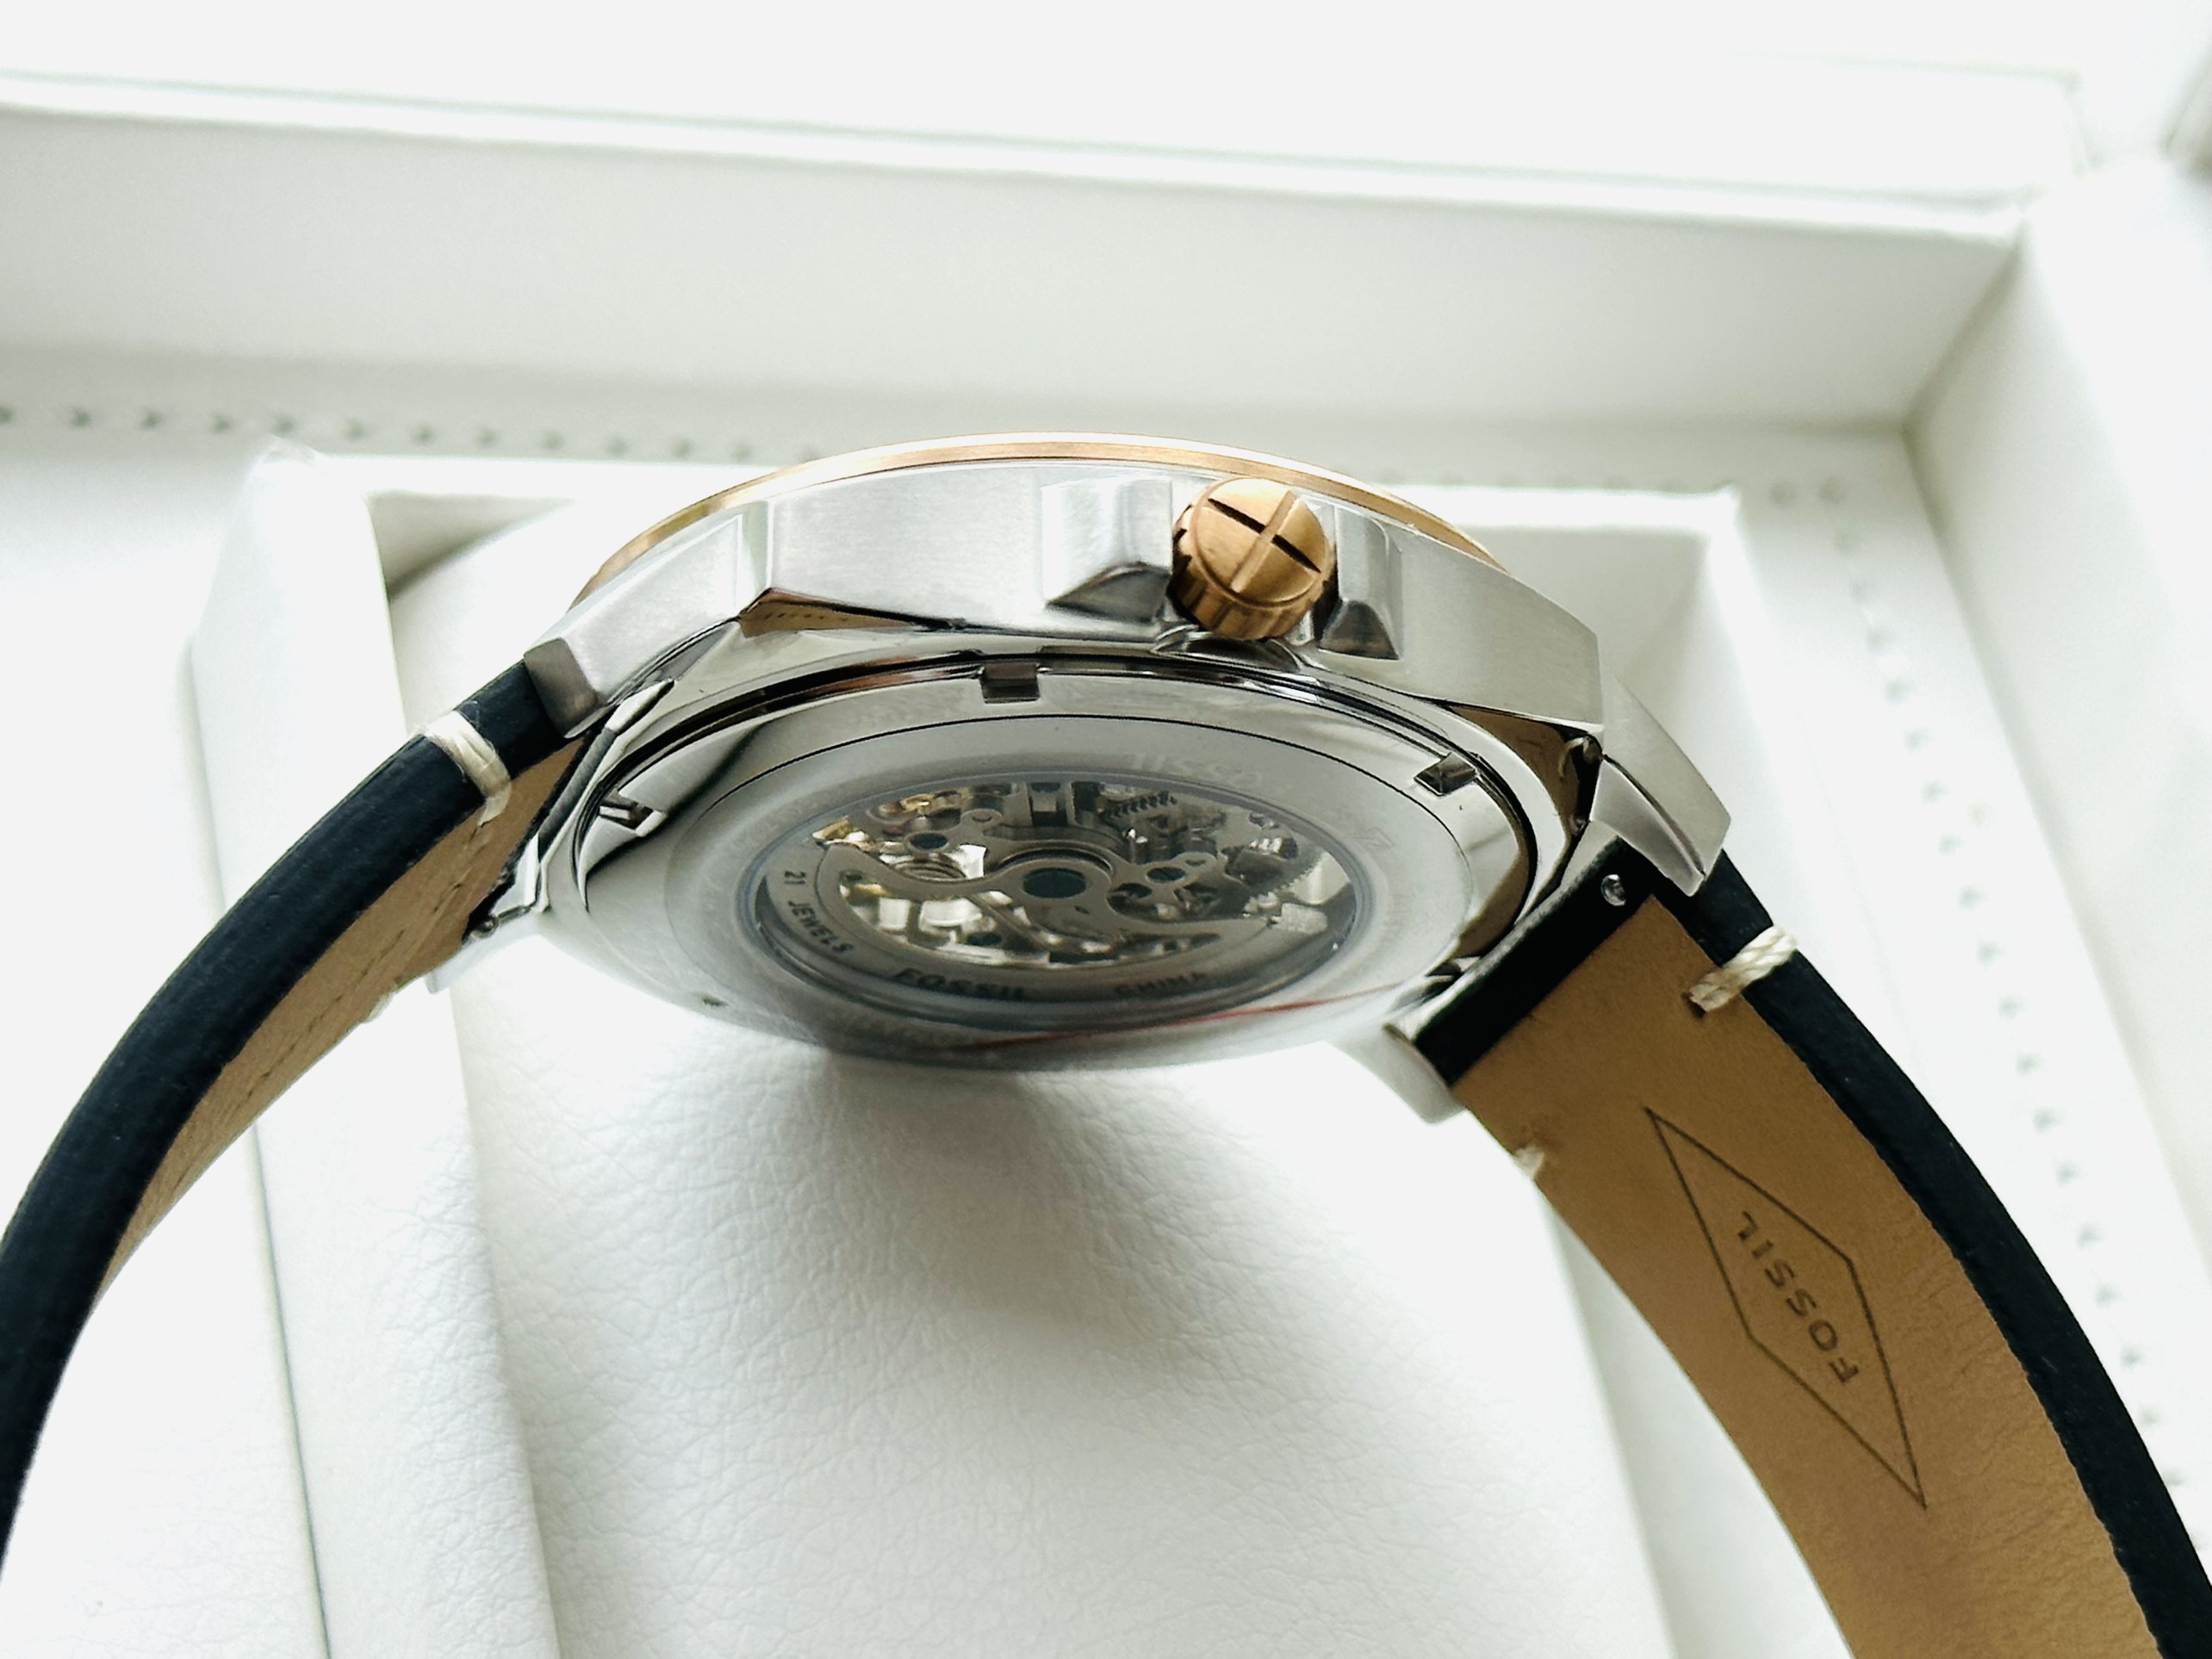 Đồng hồ FOSSIL Privateer Sport Mechanical Black Leather Watch BQ2428 - Đánh thức phong cách thể thao với đồng hồ FOSSIL chất lượng